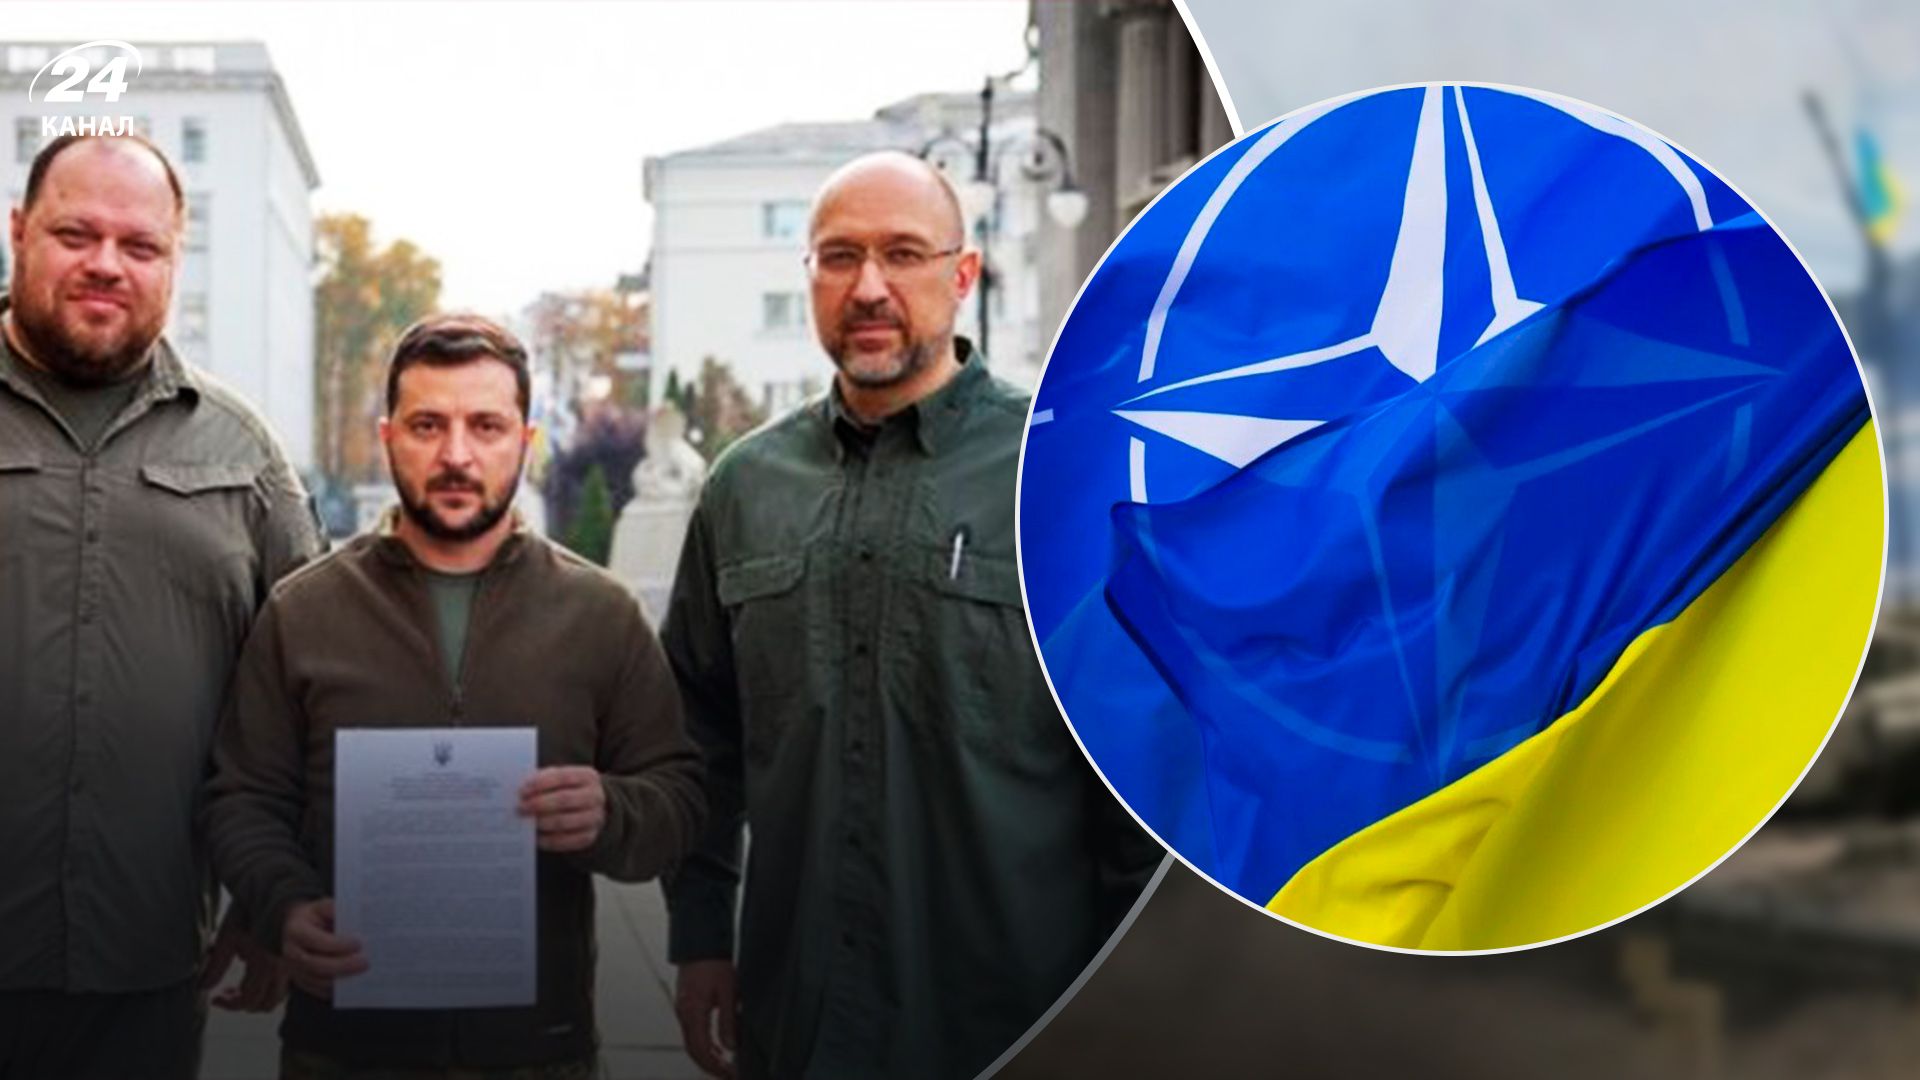 Чи узгоджувала Україна з НАТО свою заявку перед подачею: пояснення Жданова